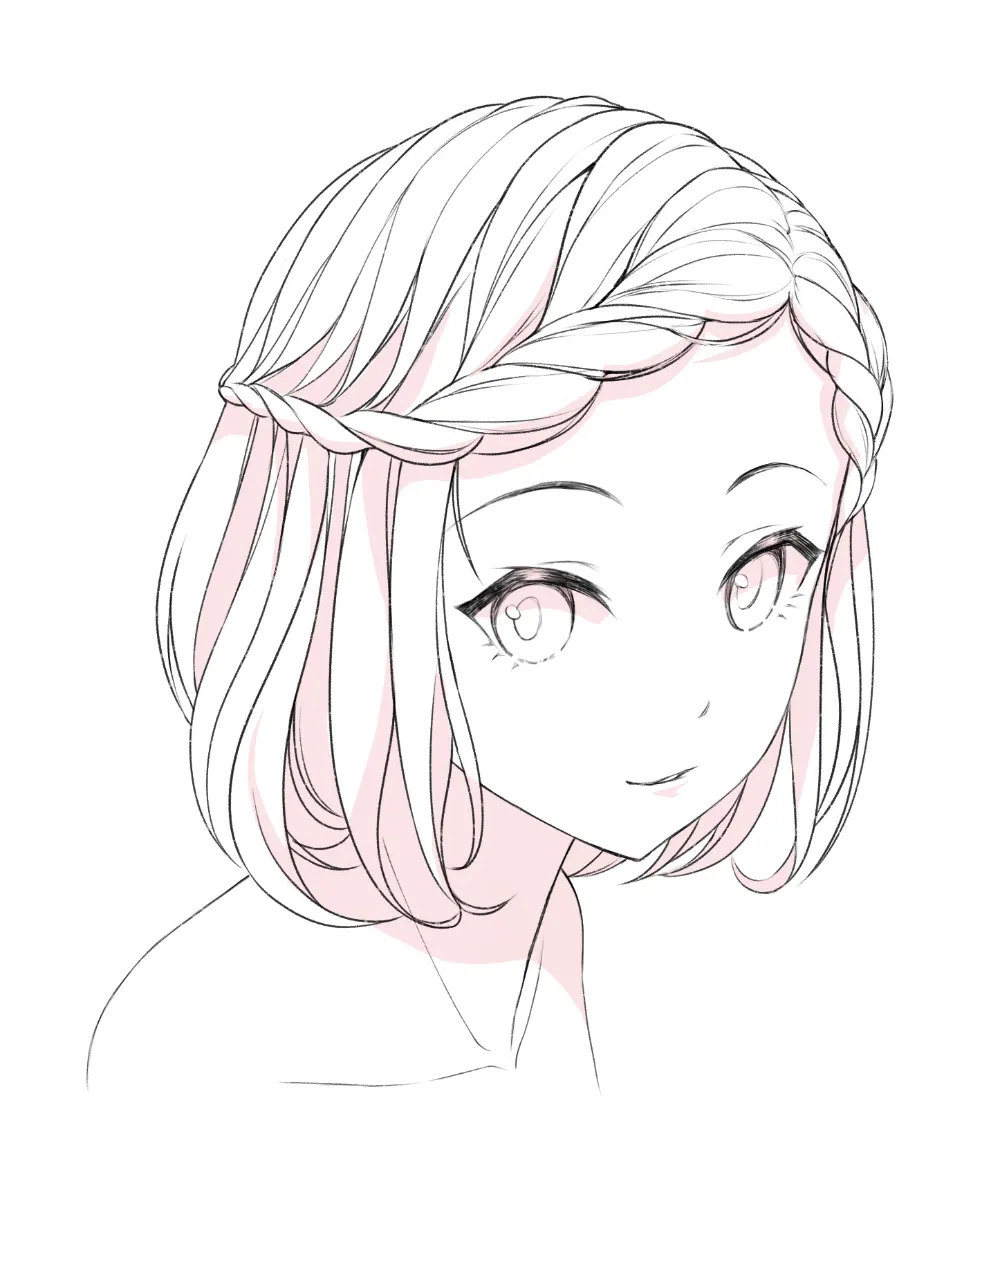 Pinterest | Chibi hair, Anime hair, Manga hair